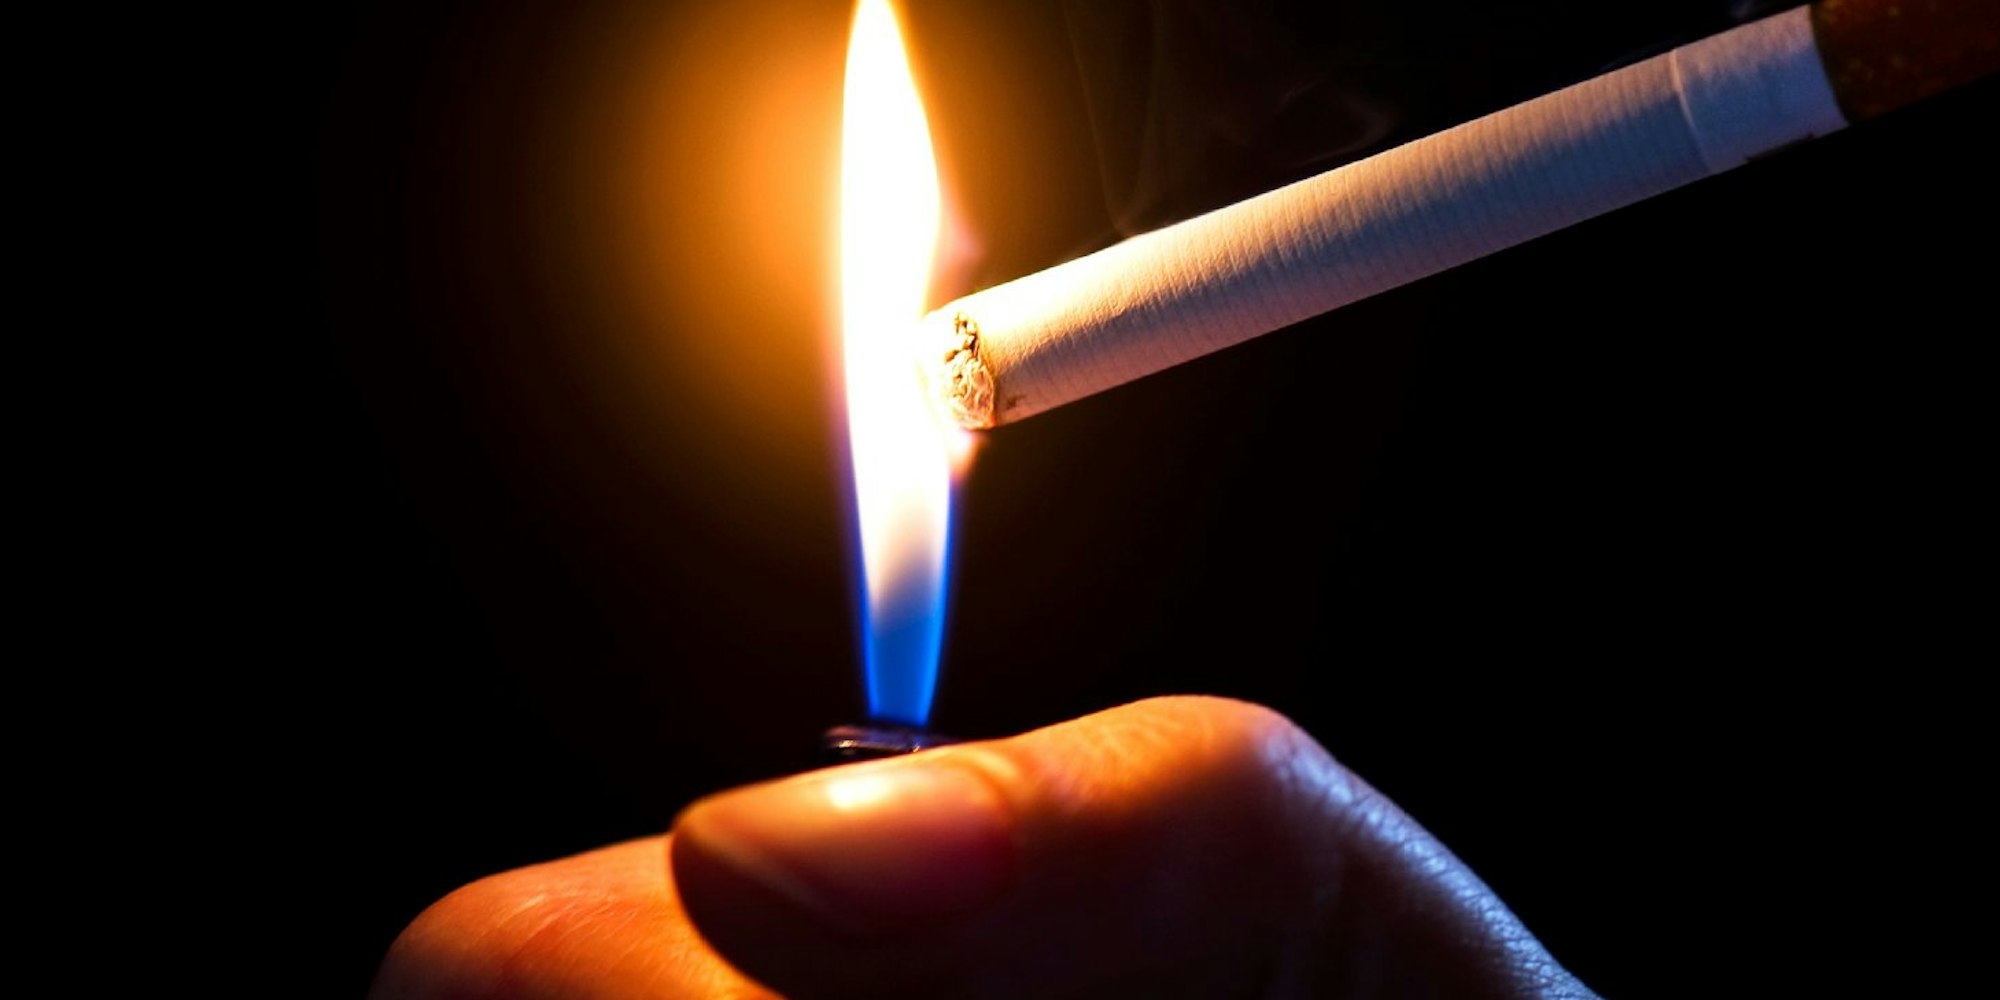 „Rauchverbote in geschlossenen Räumen sind mittlerweile die Norm und viele Menschen erwarten einen rauchfreien Arbeitsplatz.“ So begründet Tabakkonzern Reynolds das neue Rauchverbot.